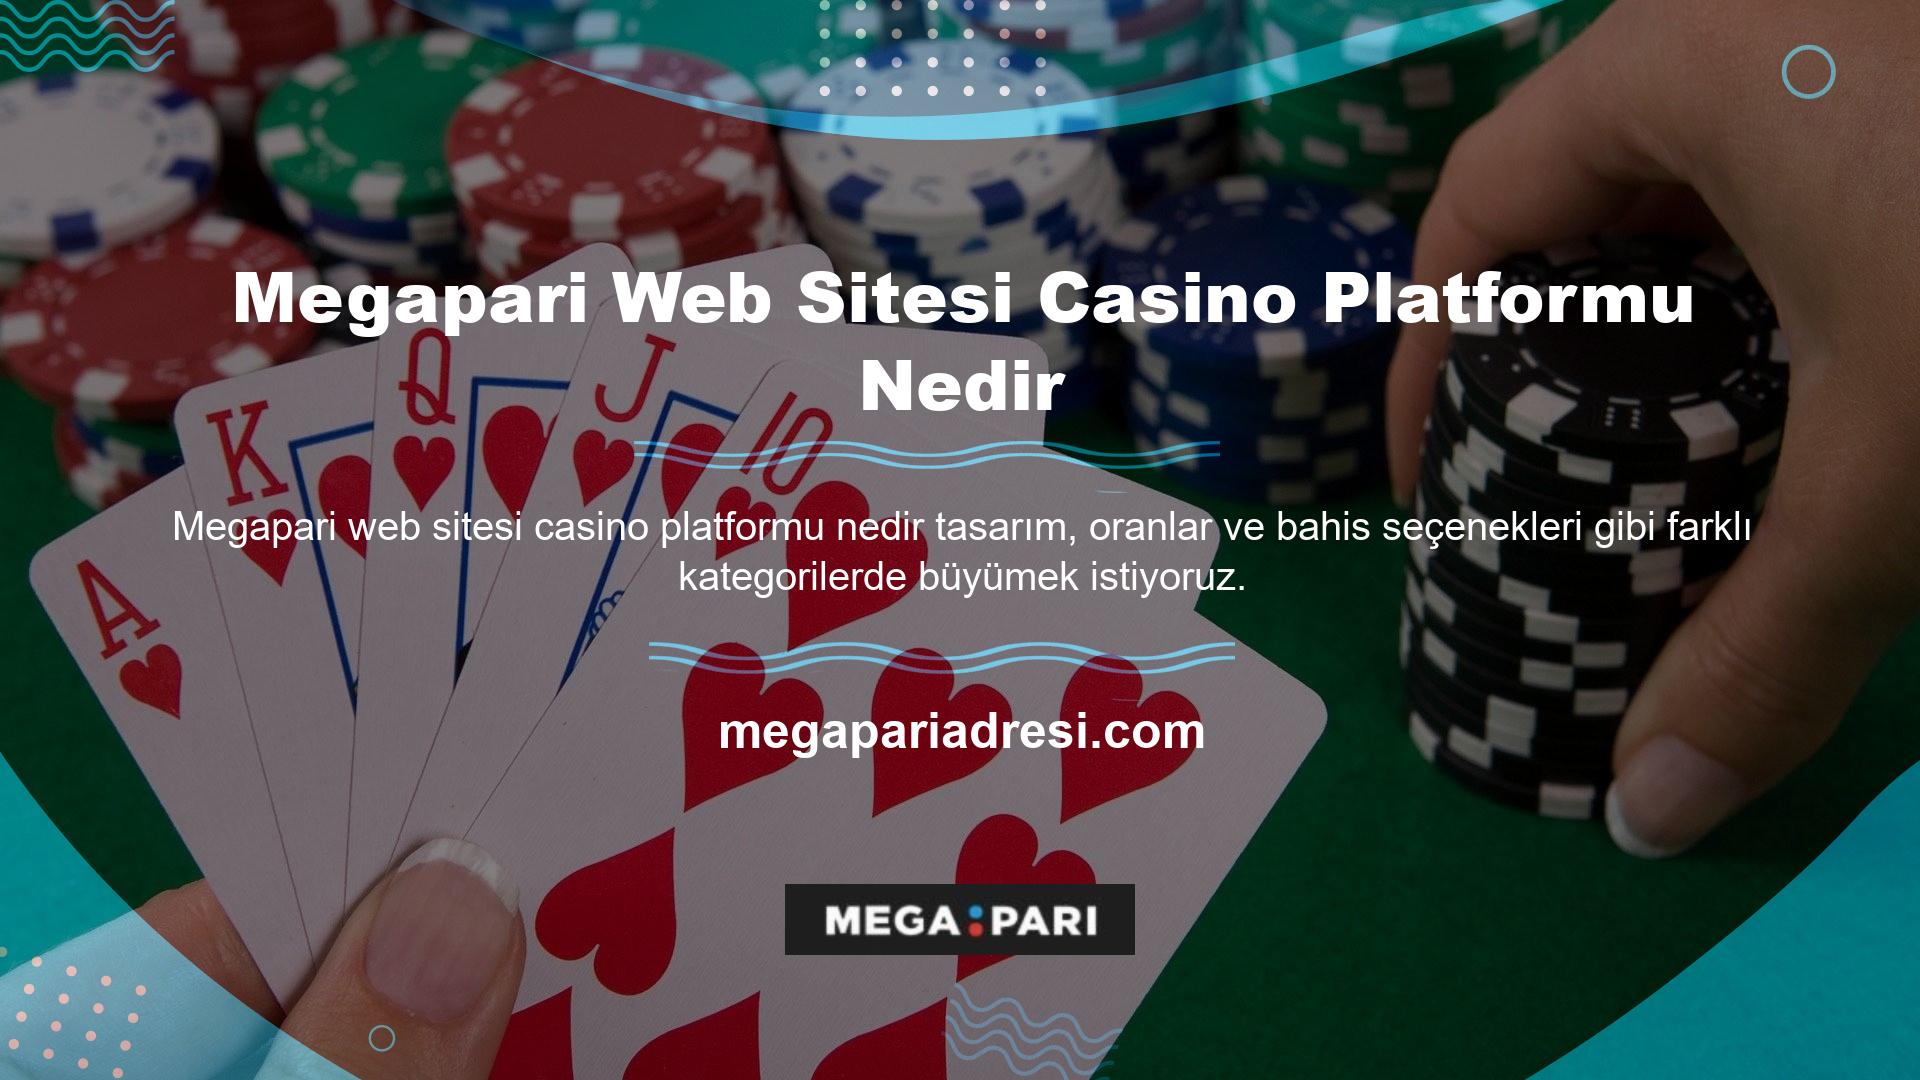 Bu haliyle Megapari web sitesi, bahisçilerin sitenin her yönü hakkında ihtiyaç duydukları bilgileri alabilecekleri bir casino platformudur